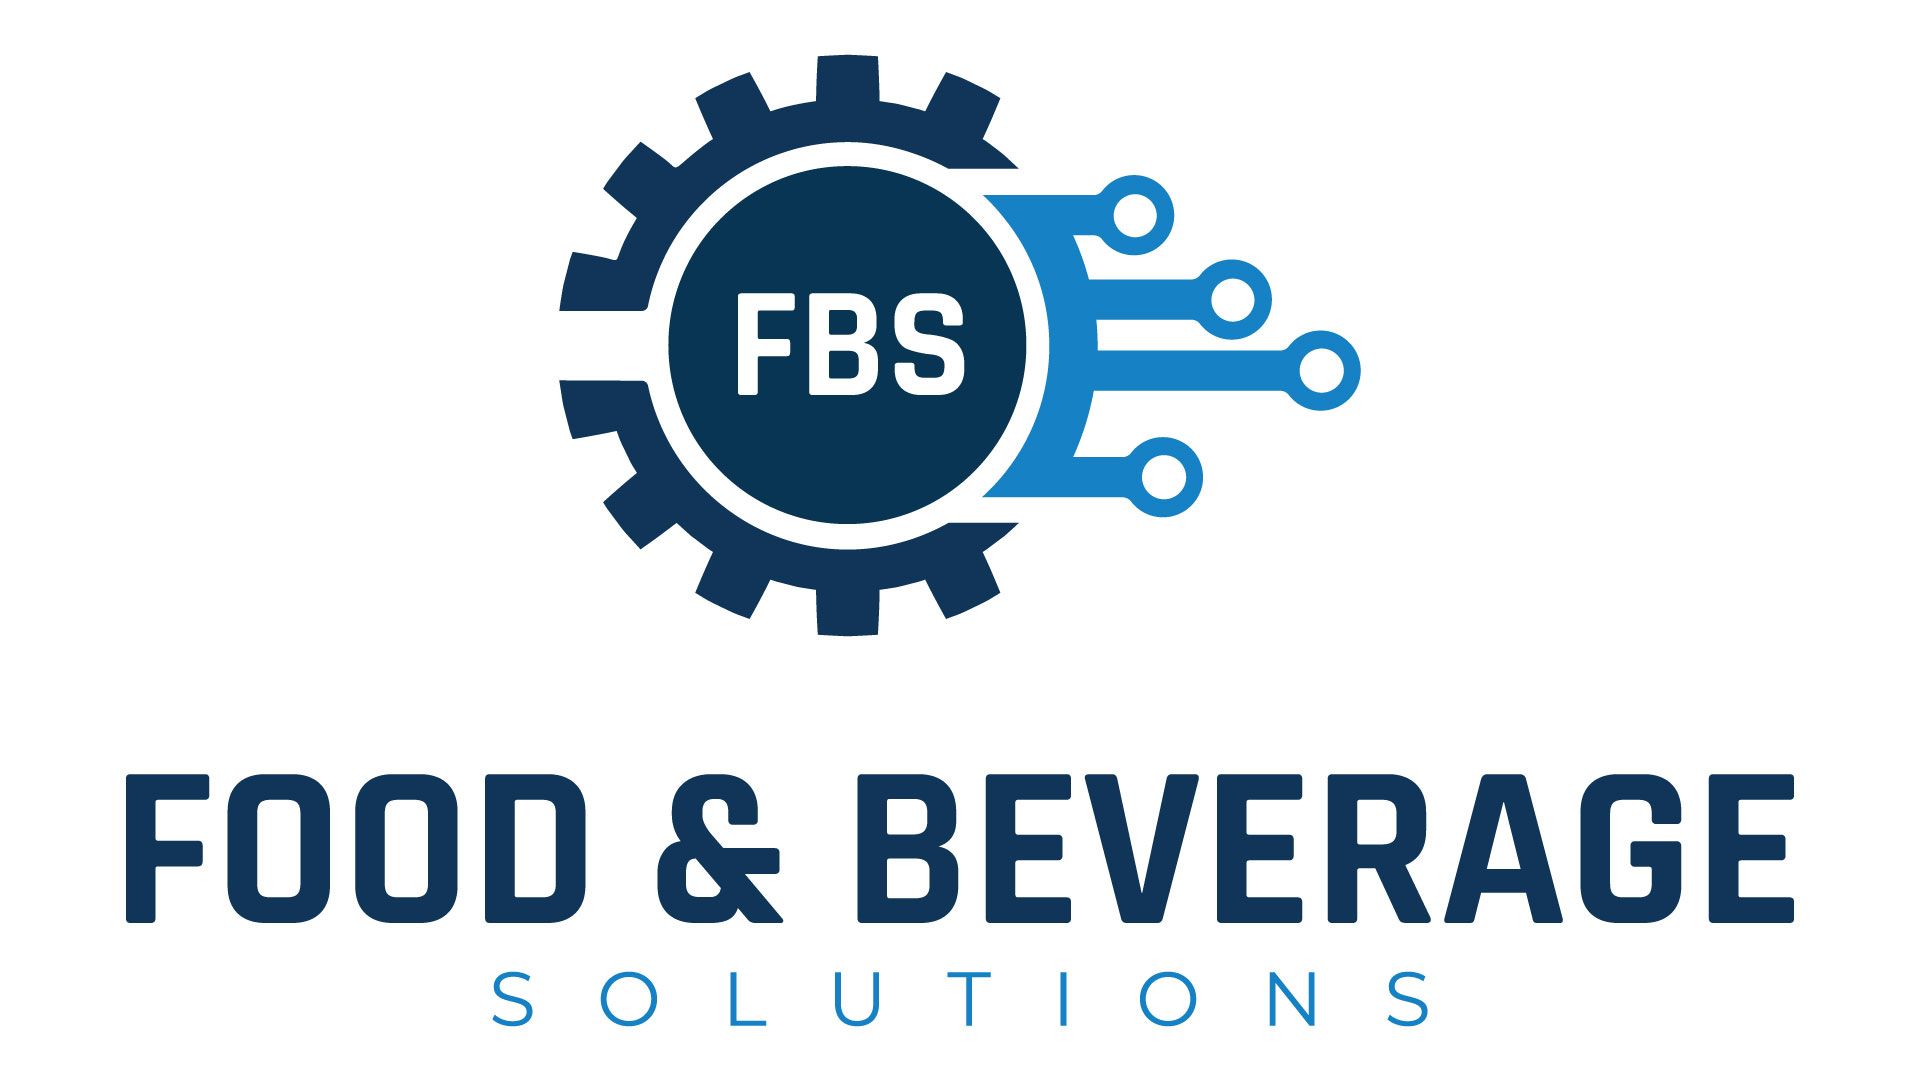 FBS Food & Beverage Solutions